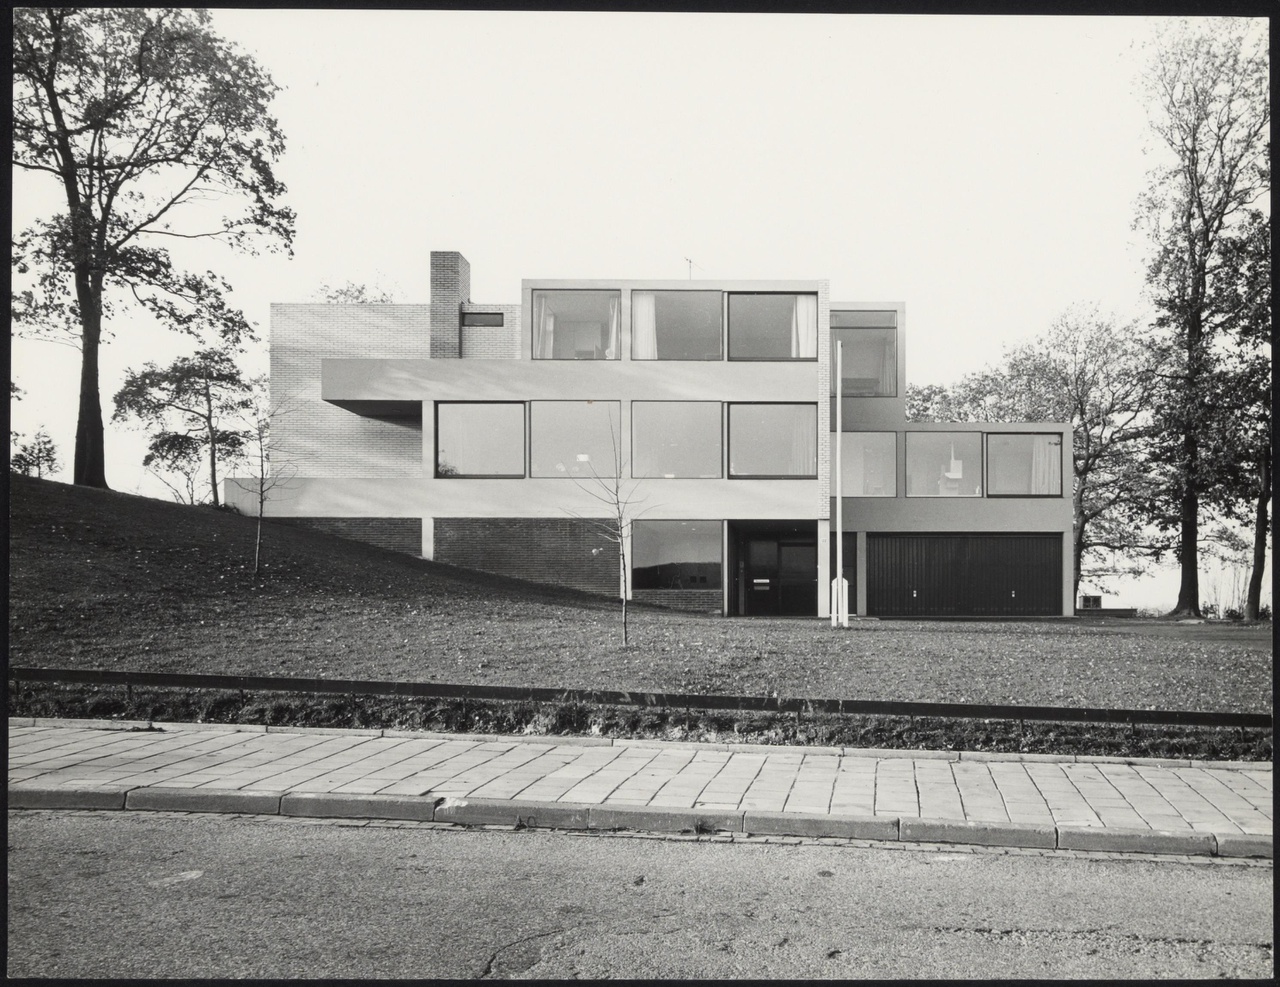 Afbeelding van woning Van Slobbe, Heerlen, 1964, oostkant vanaf de weg